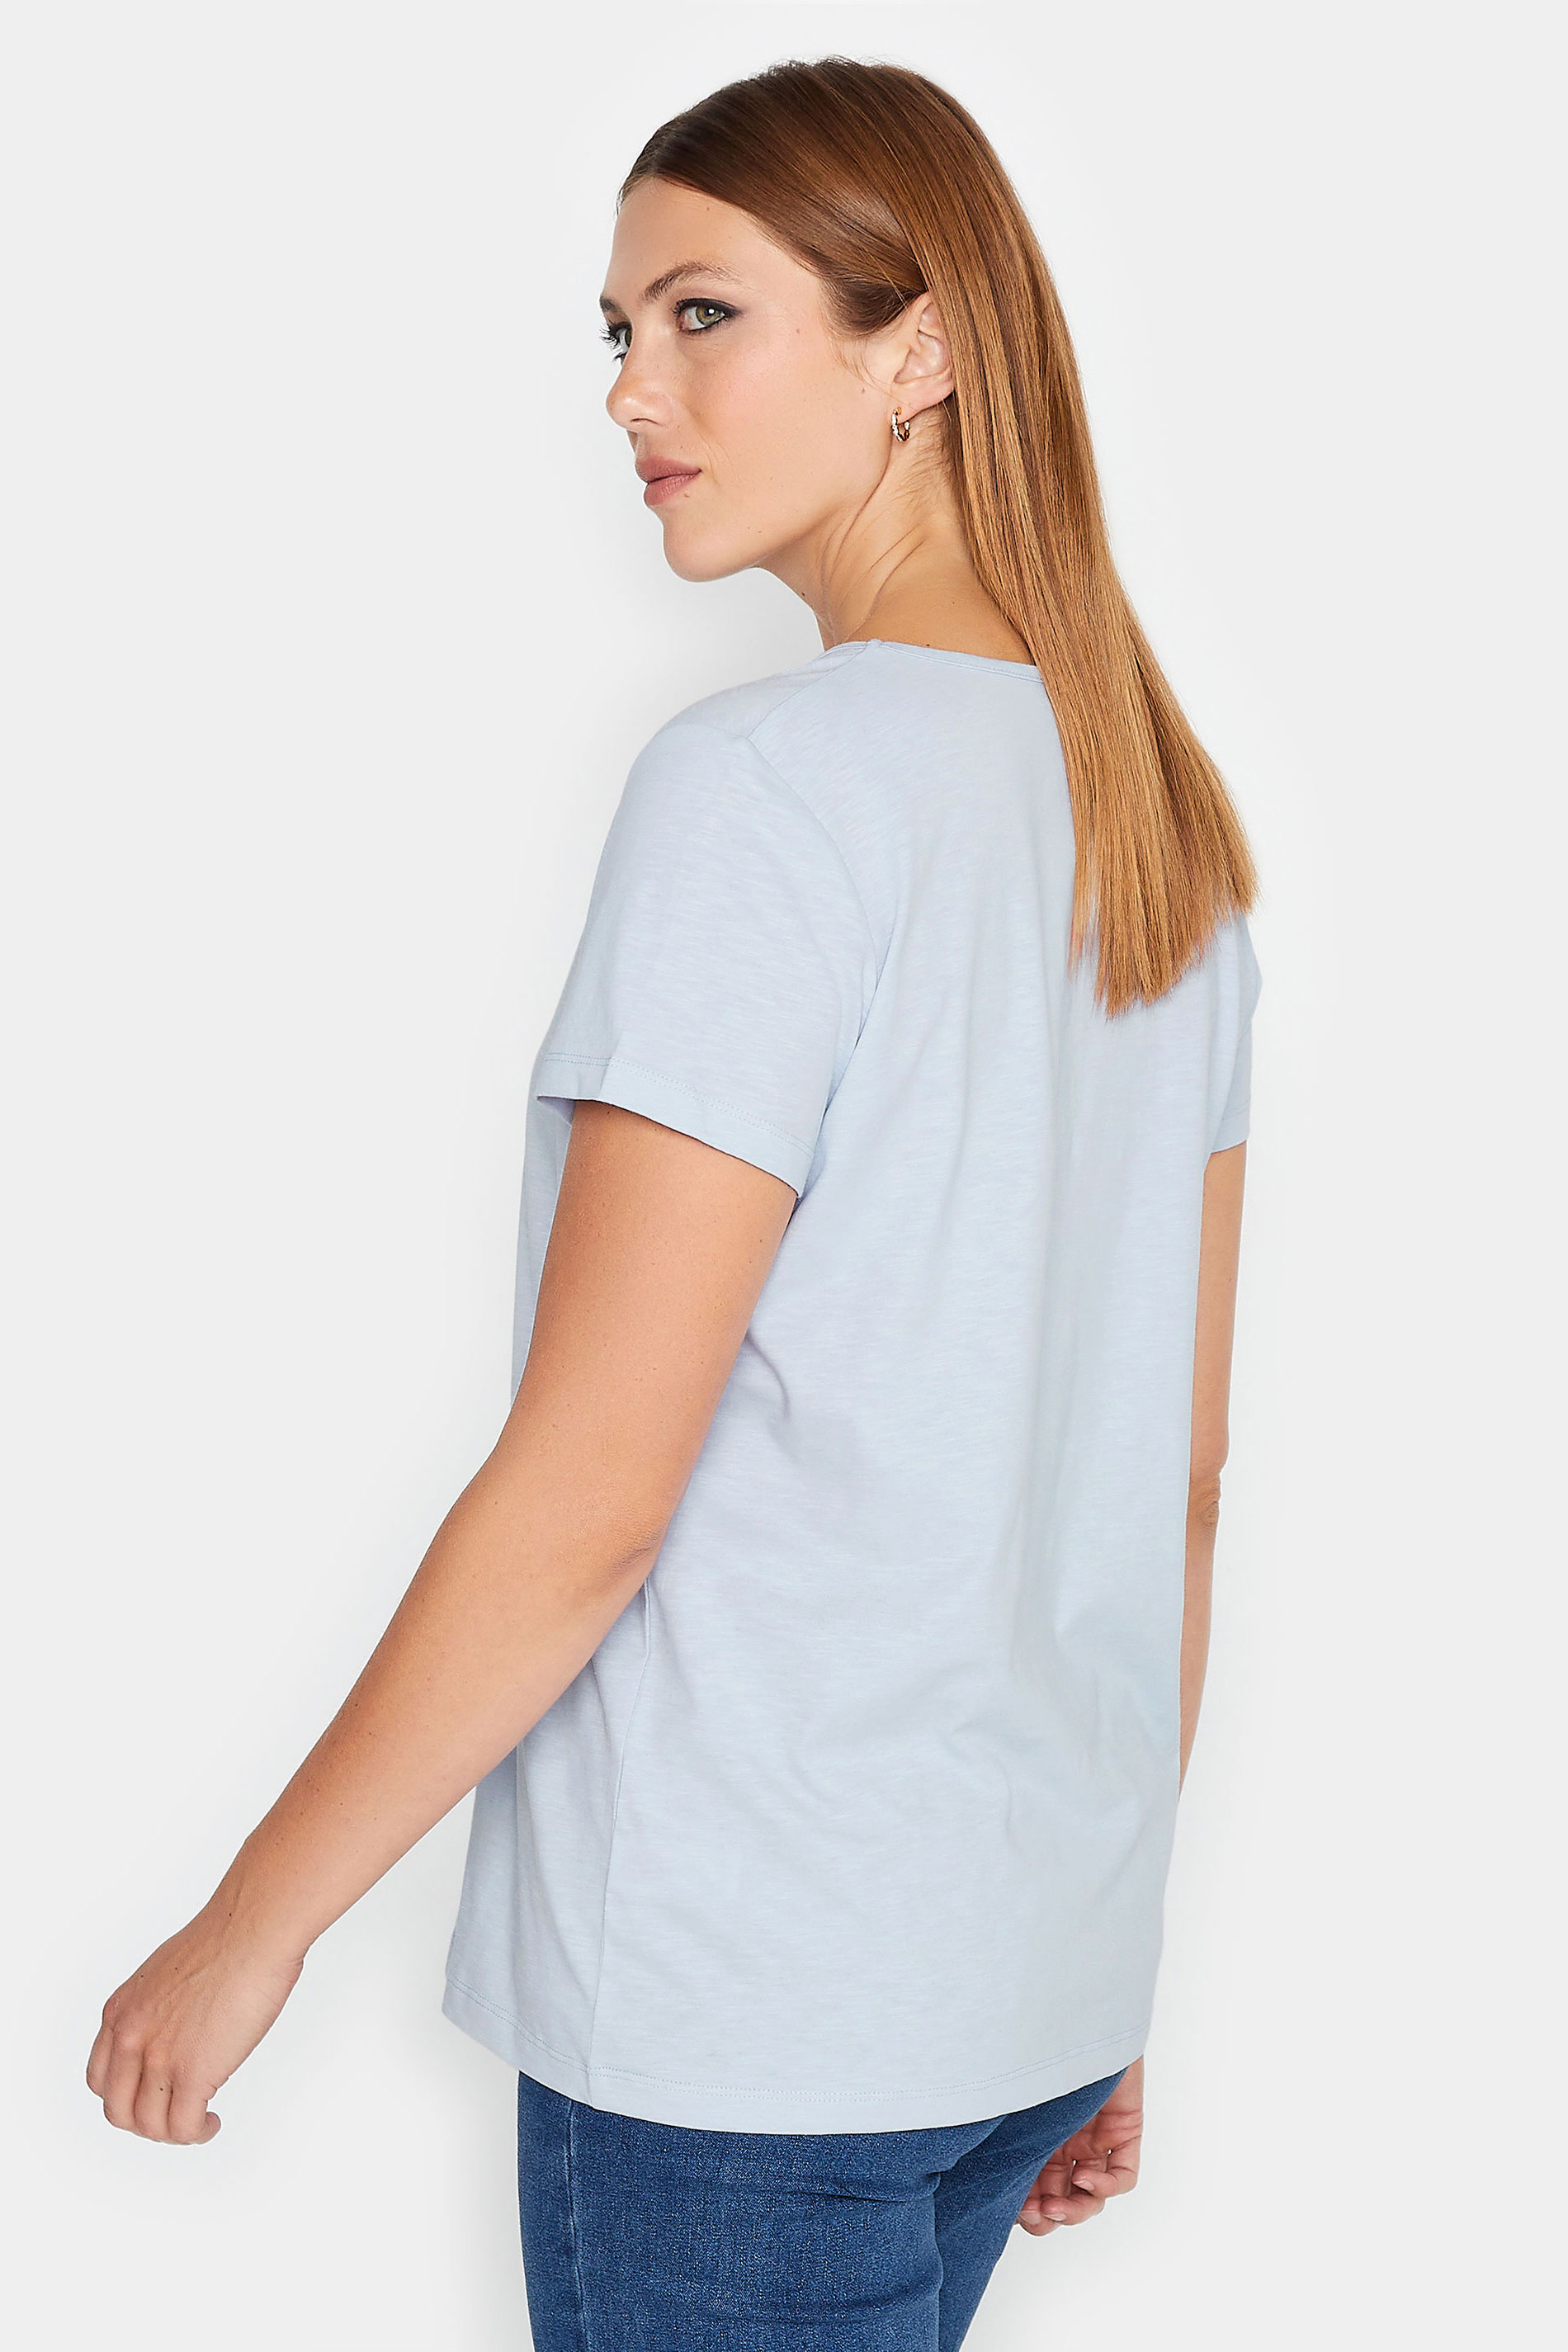 LTS Tall Womens Light Blue Short Sleeve T-Shirt | Long Tall Sally  3